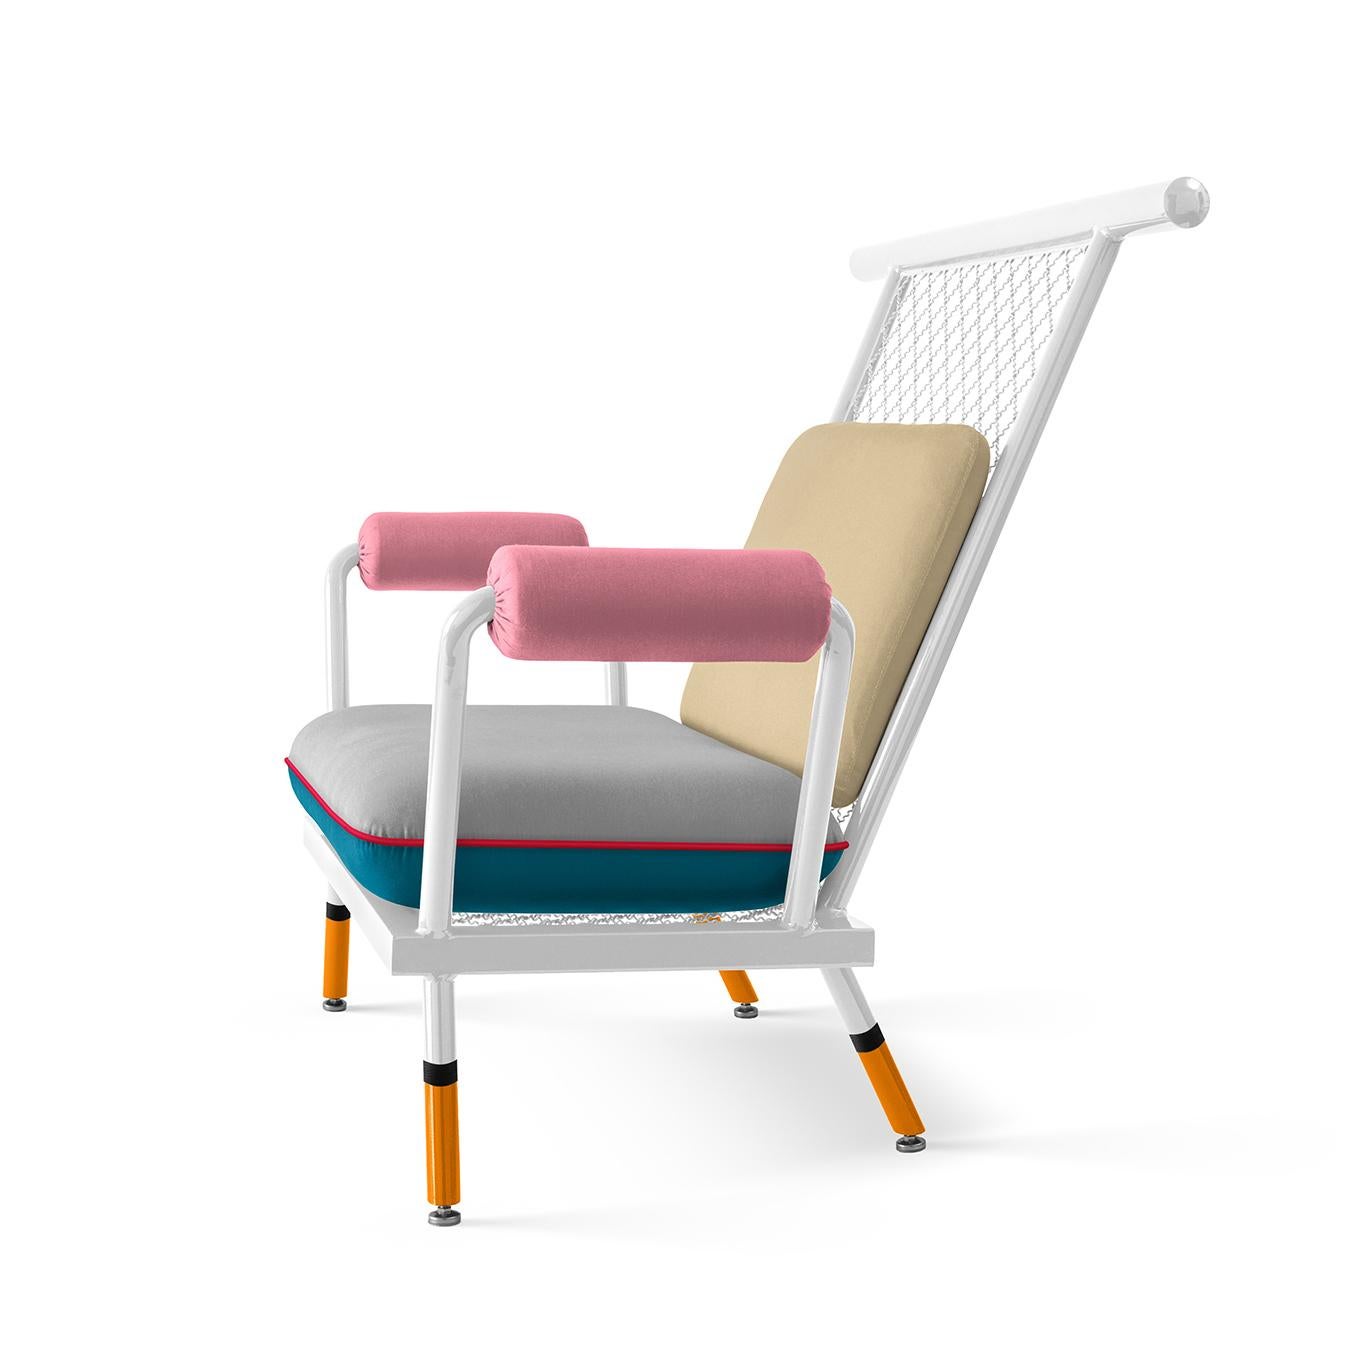 Ehrenvolle Erwähnung beim European Product Design Award: Kategorie Innenraumprodukte.

Die Hauptinspiration für den Stuhl PK6 stammt von Standard-Metallstrukturen, die für sekundäre Architekturprojekte verwendet werden.
Dieses Projekt verwandelt